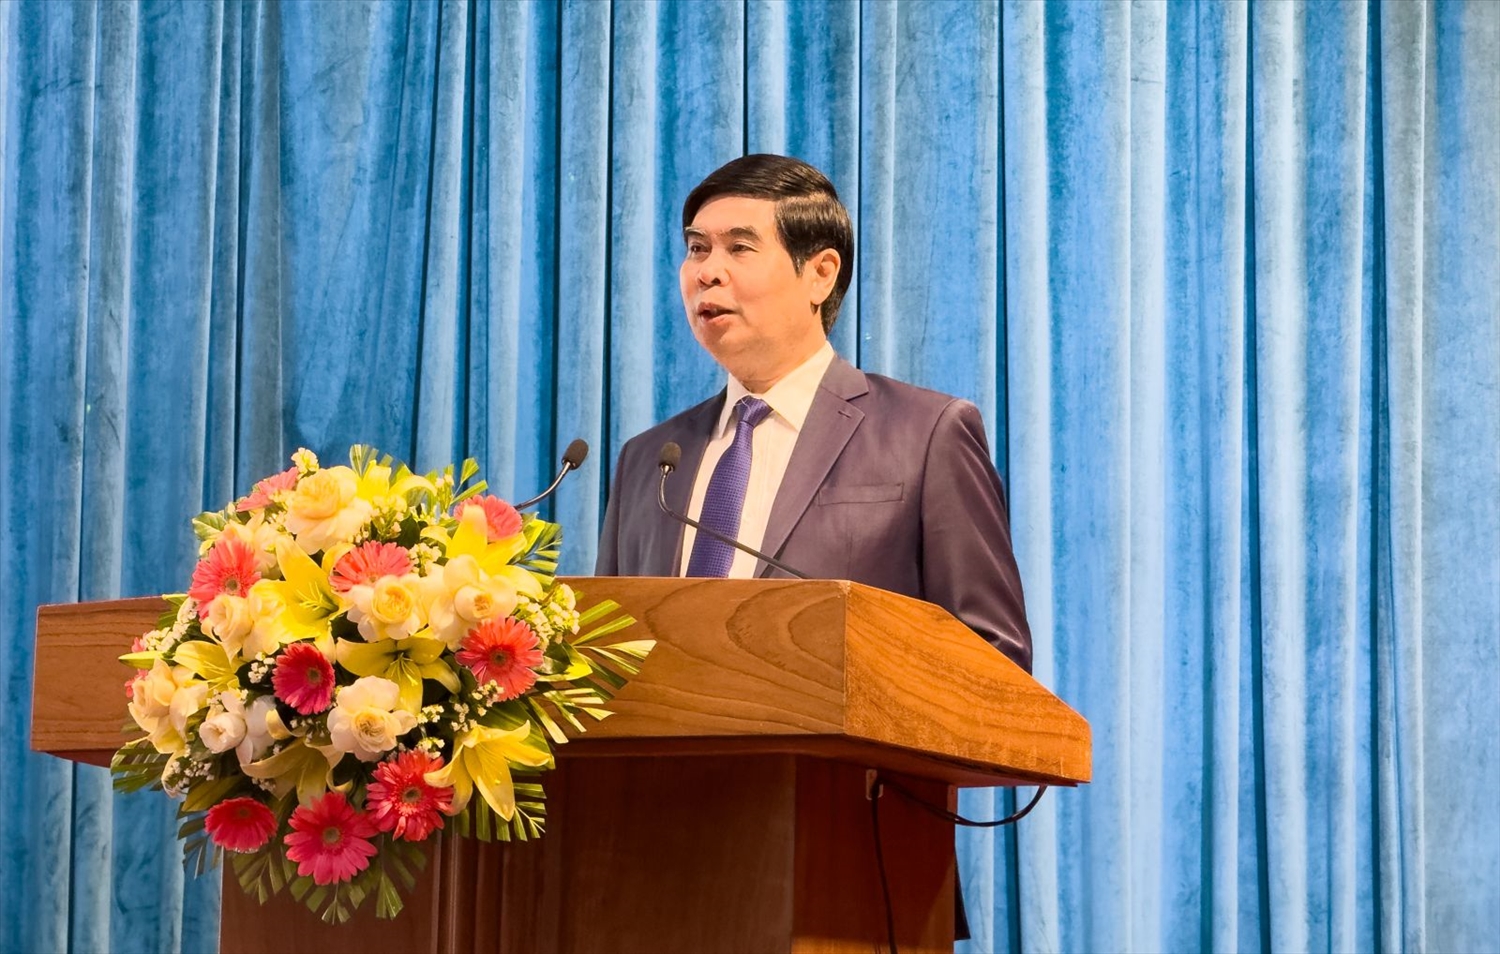 Ông Lâm Hải Giang, Phó chủ tịch UBND tỉnh Bình Định phát biểu tại Hội nghị